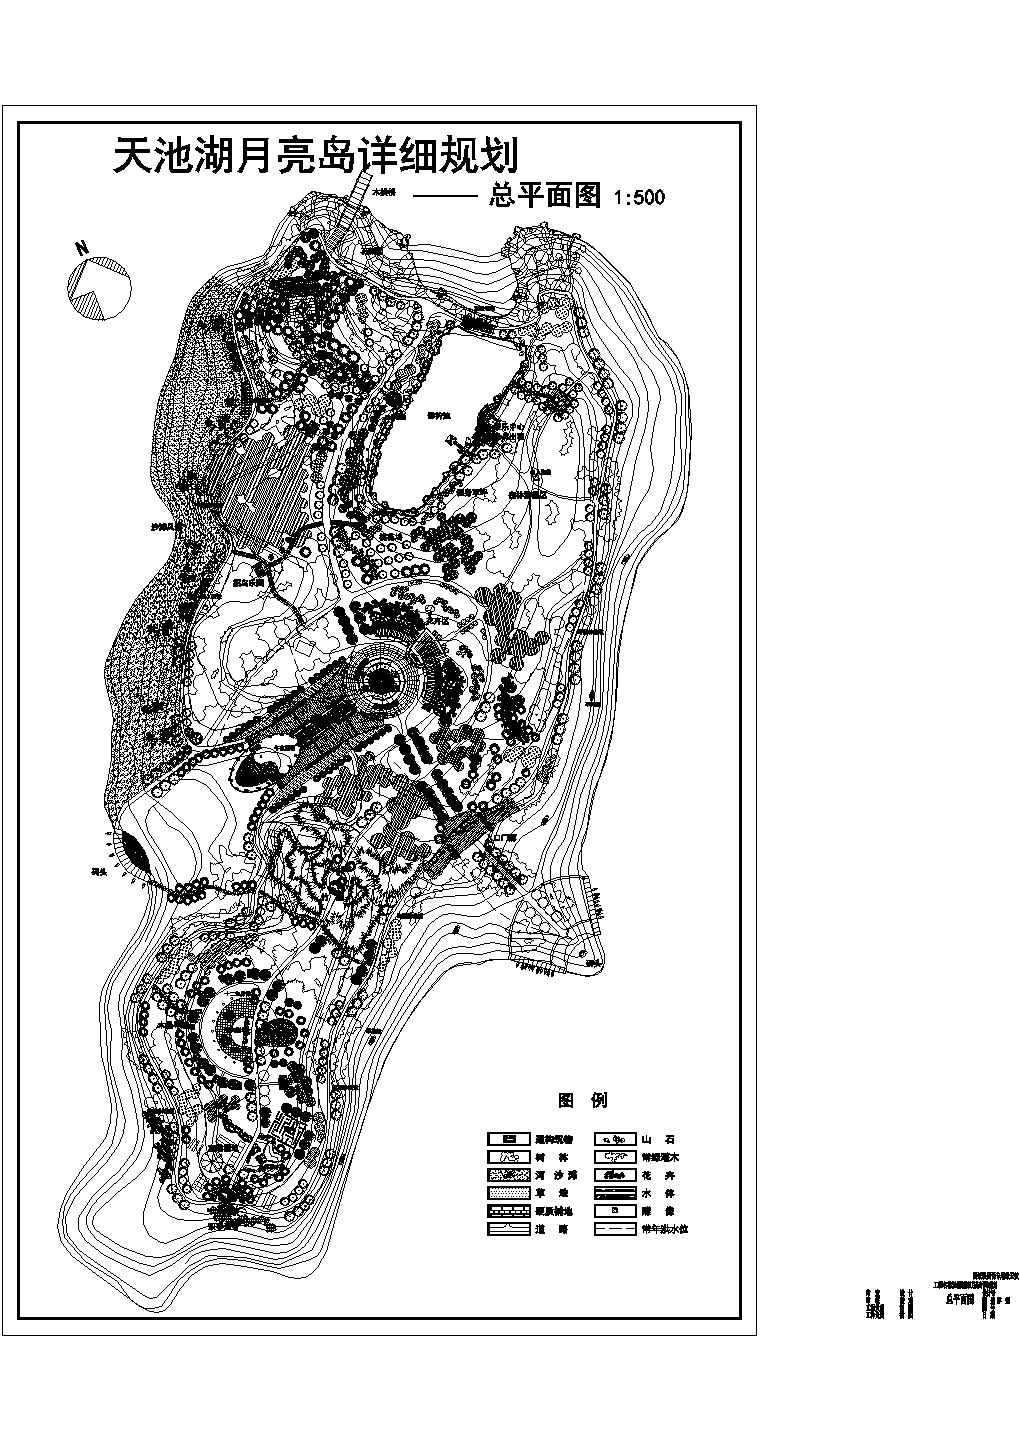 天池湖月亮岛公园CAD总平面图